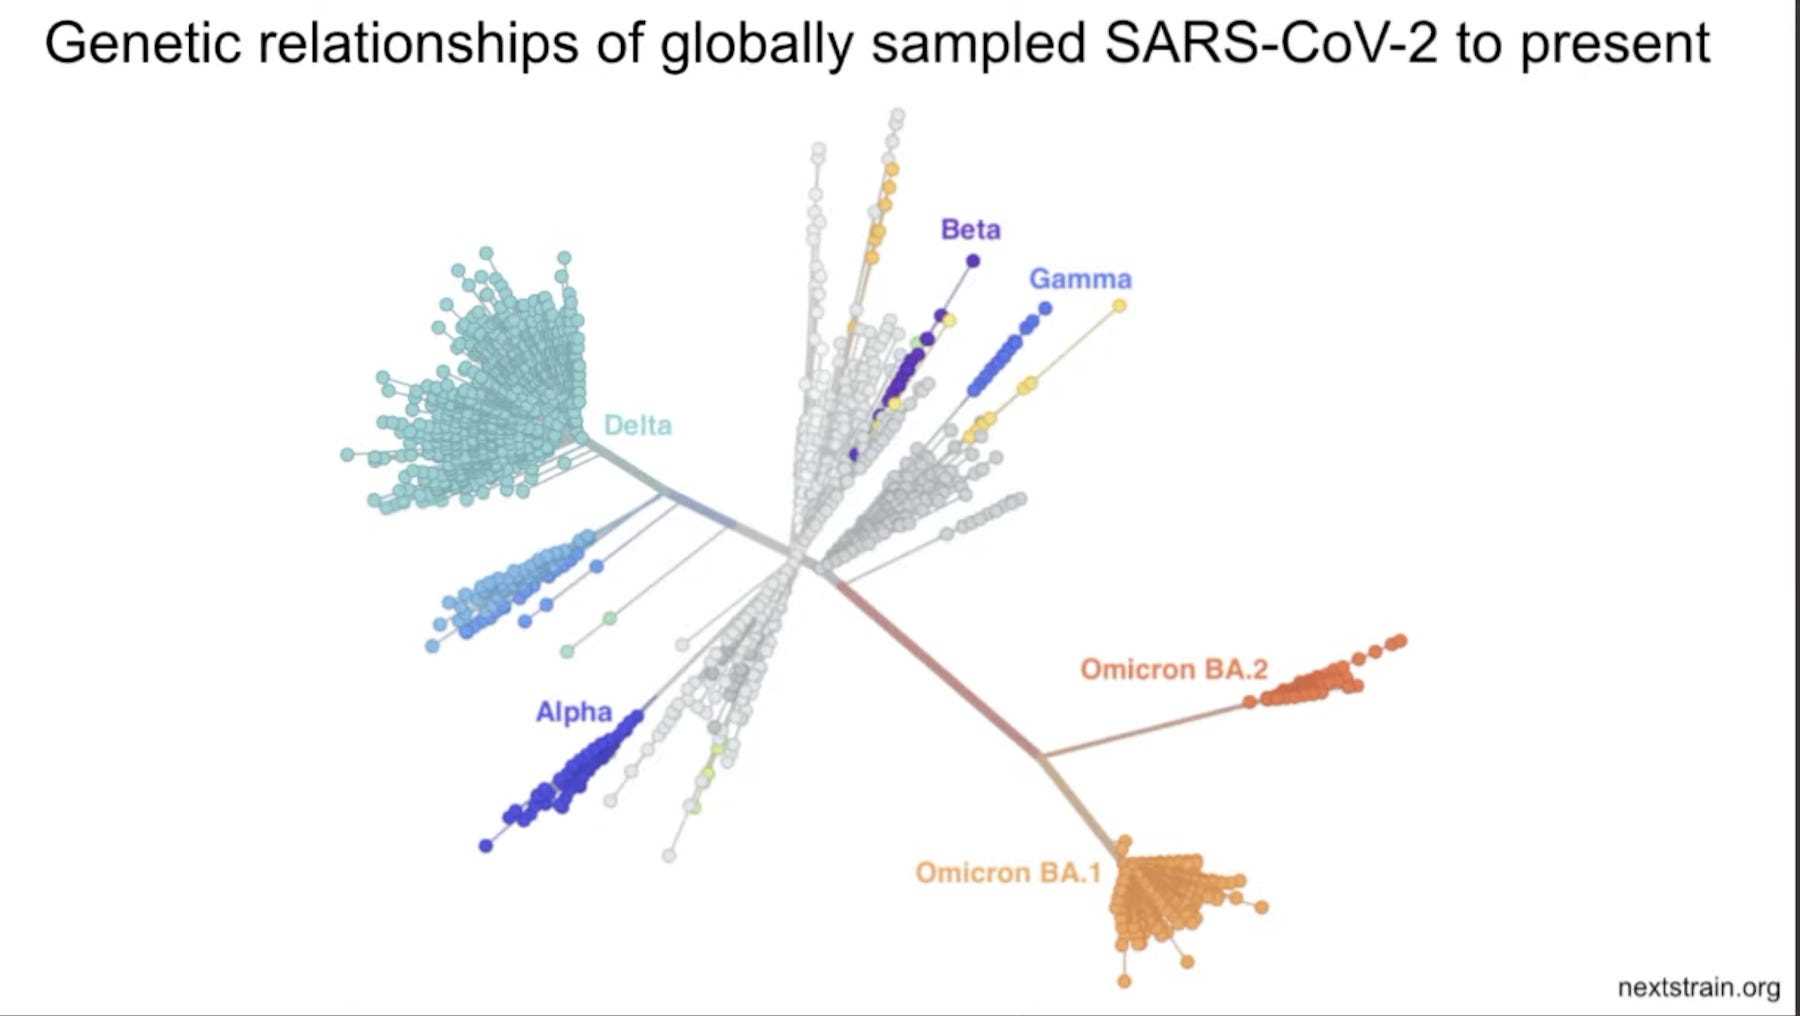 Grafik, die zeigt, wie genetisch verwandt verschiedene SARS-CoV-2-Varianten sind, wobei Omicrons gruppiert sind, weit entfernt von anderen wie Delta und Beta